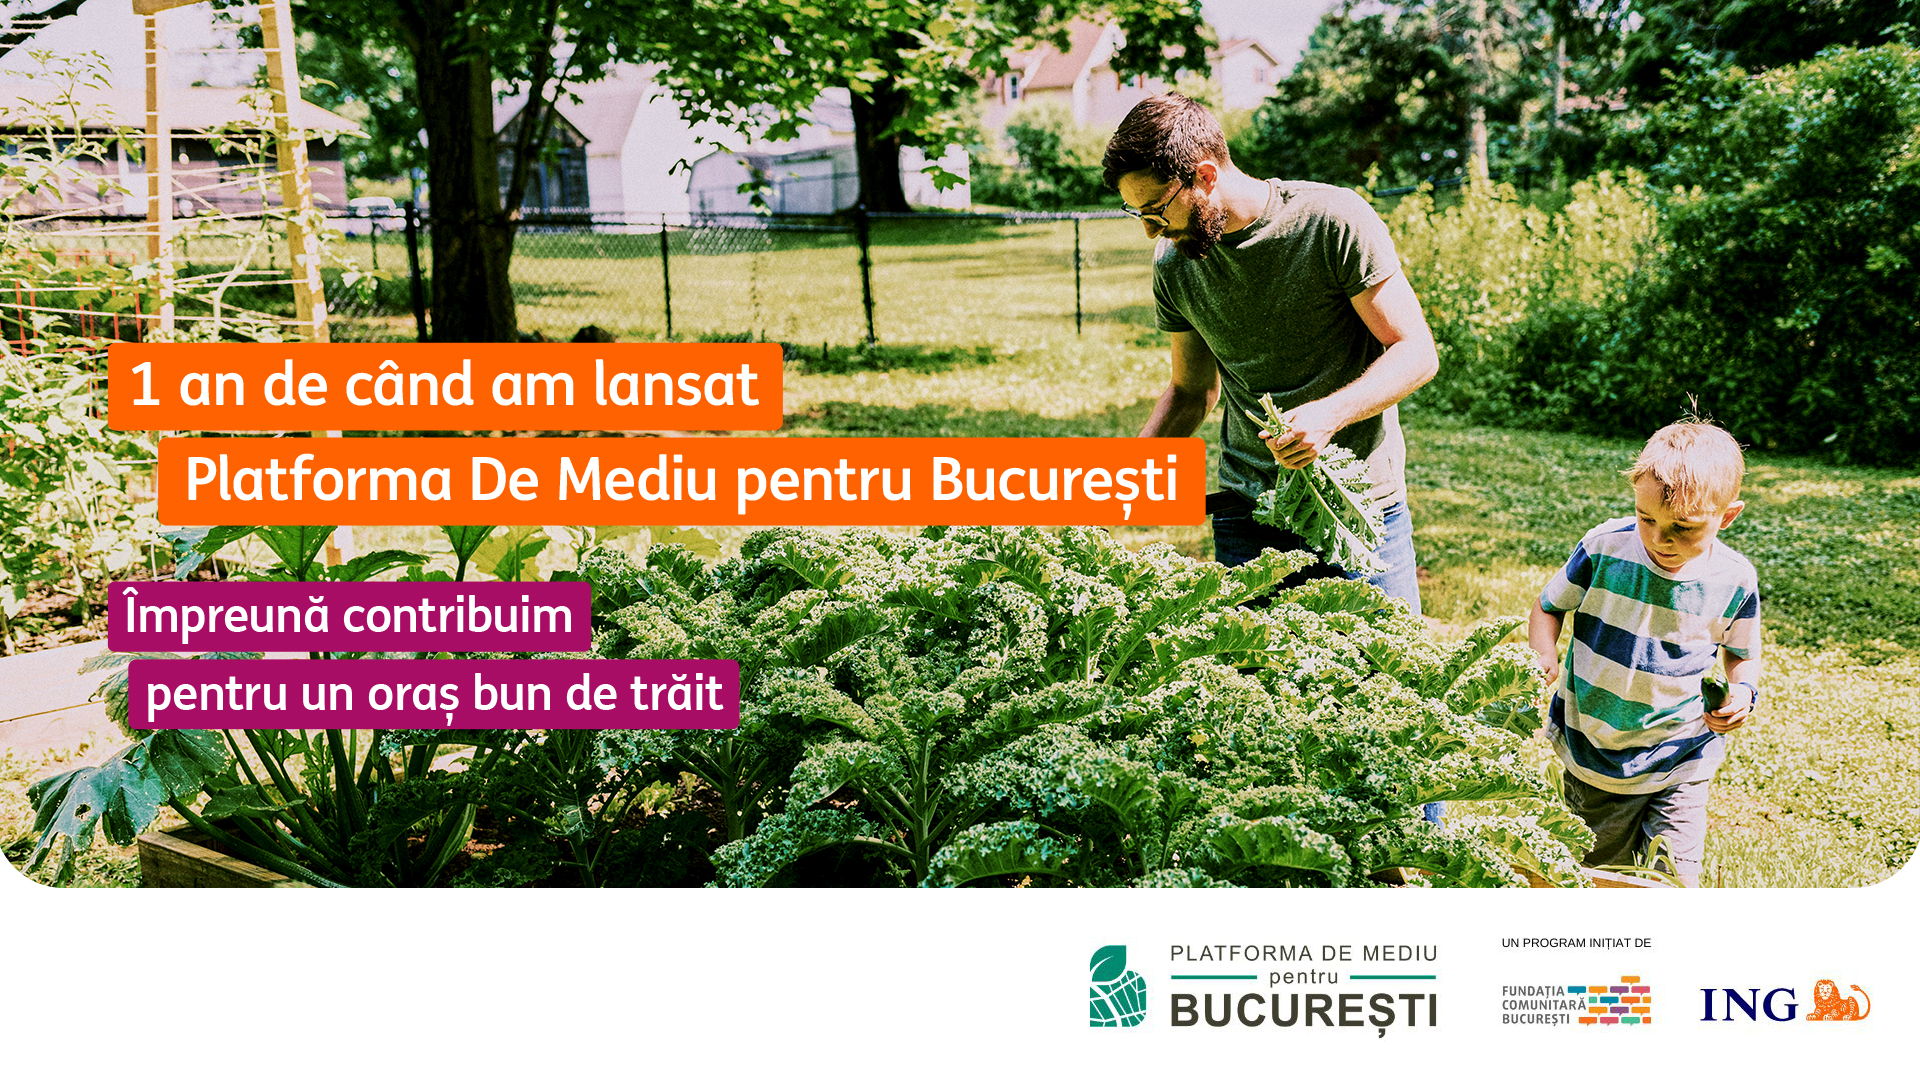 Platforma de Mediu pentru București împlinește un an de la lansare: 9 proiecte de mediu și finanțări de 1,2 milioane de lei pentru un oraș mai bun de trăit